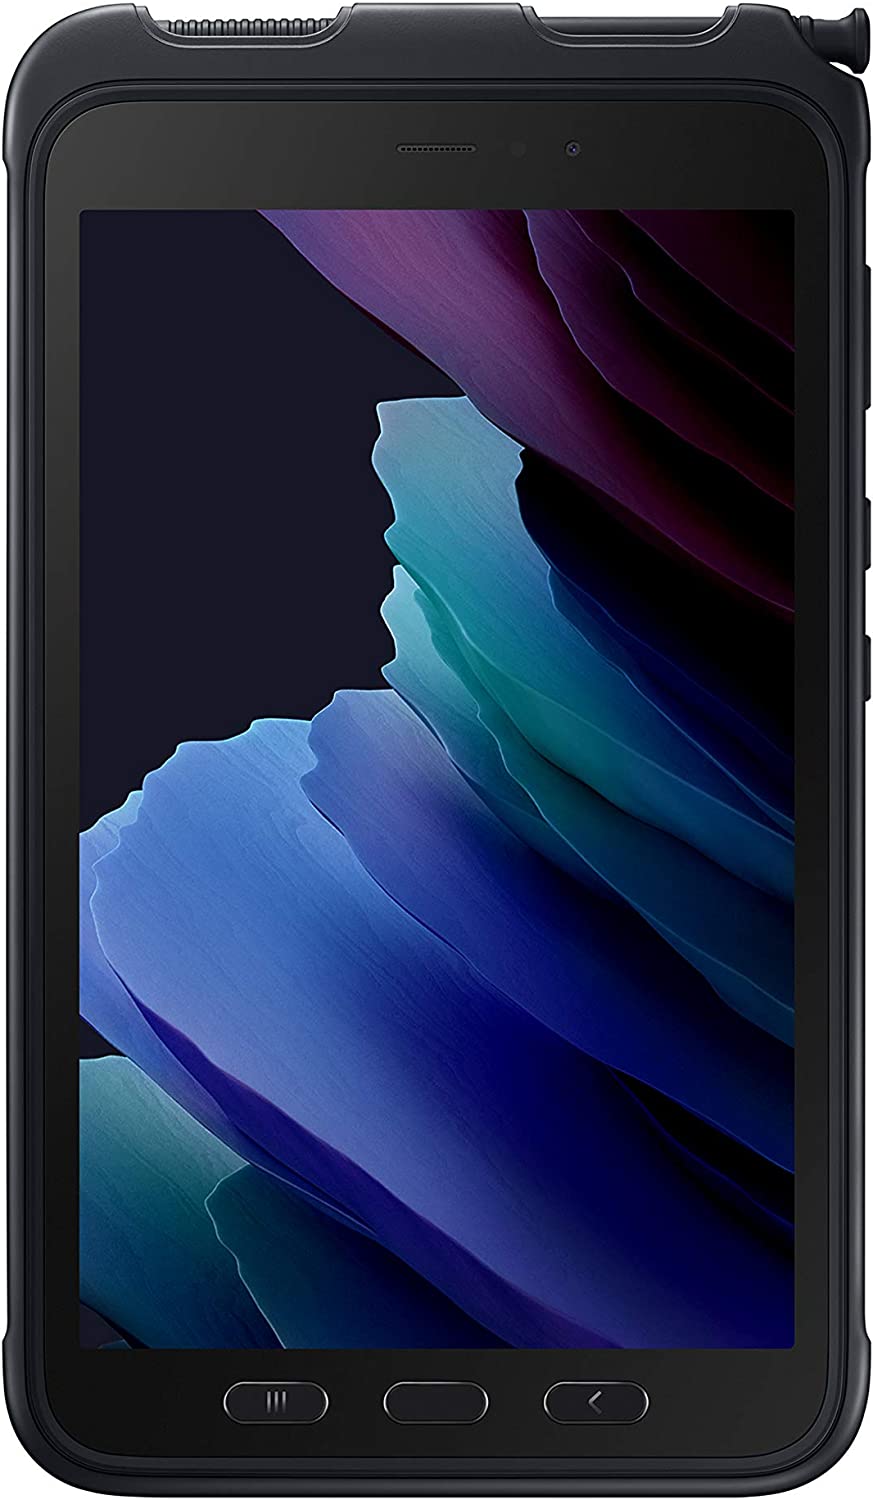 SAMSUNG Galaxy Tab Active3 Enterprise Edition Tablet Multiusos Resistente de 8 Pulgadas, 64 GB y WiFi y LTE (Desbloqueado) | Seguridad biométrica (SM-T577UZKDN14), Negro